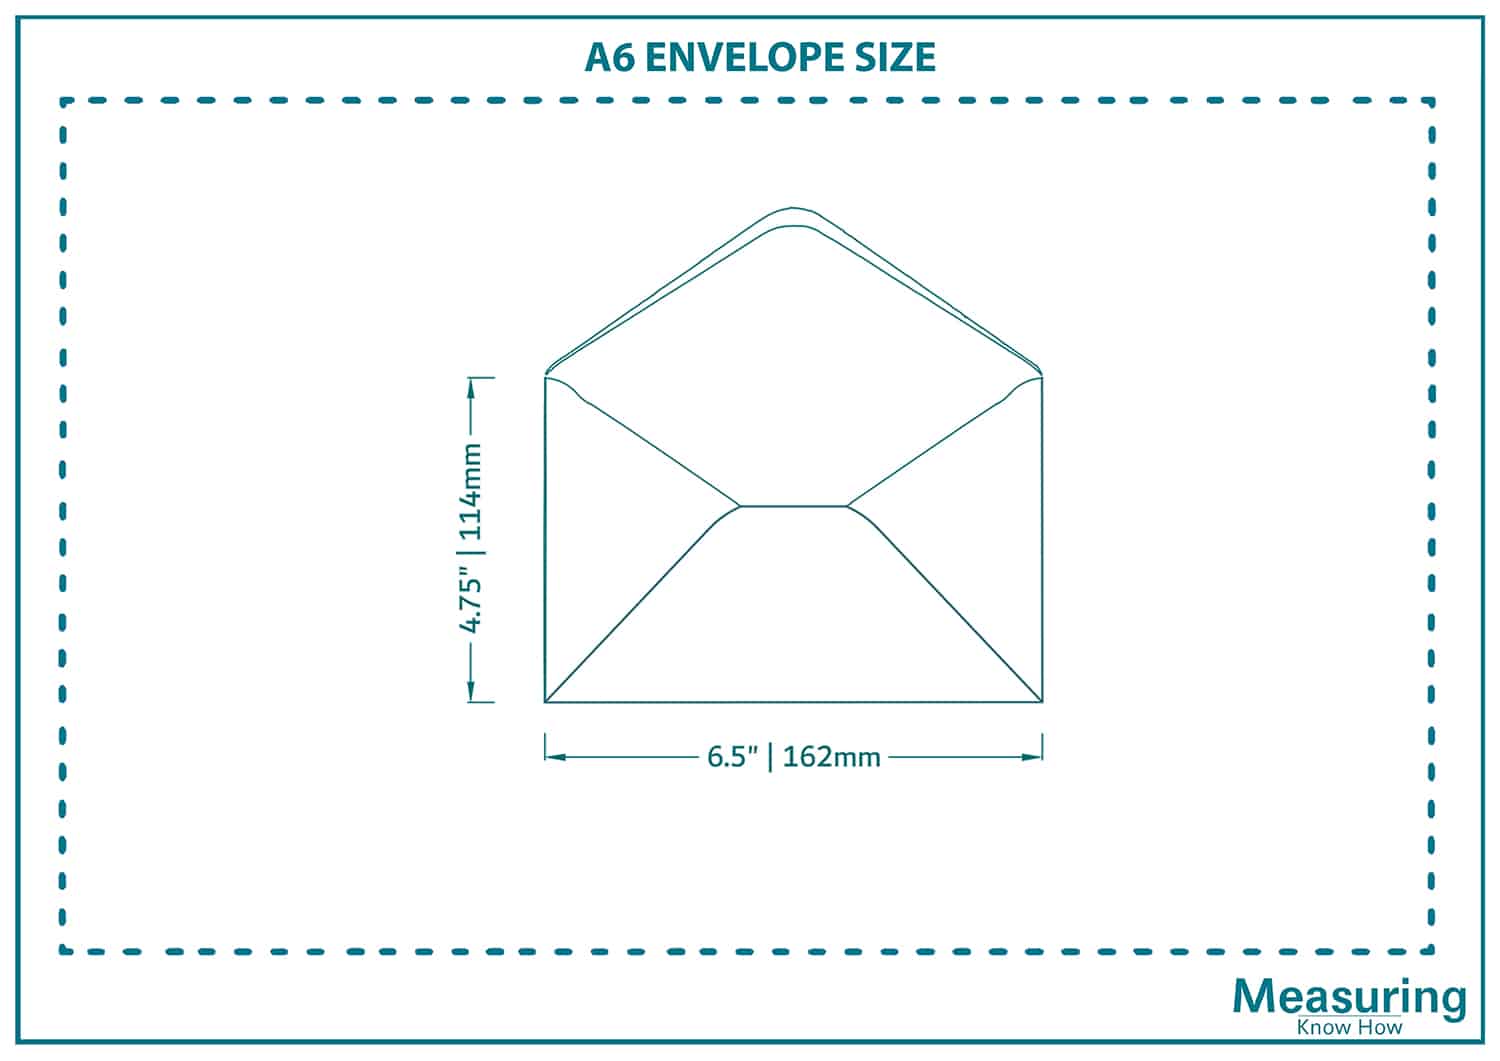 A6 envelope size